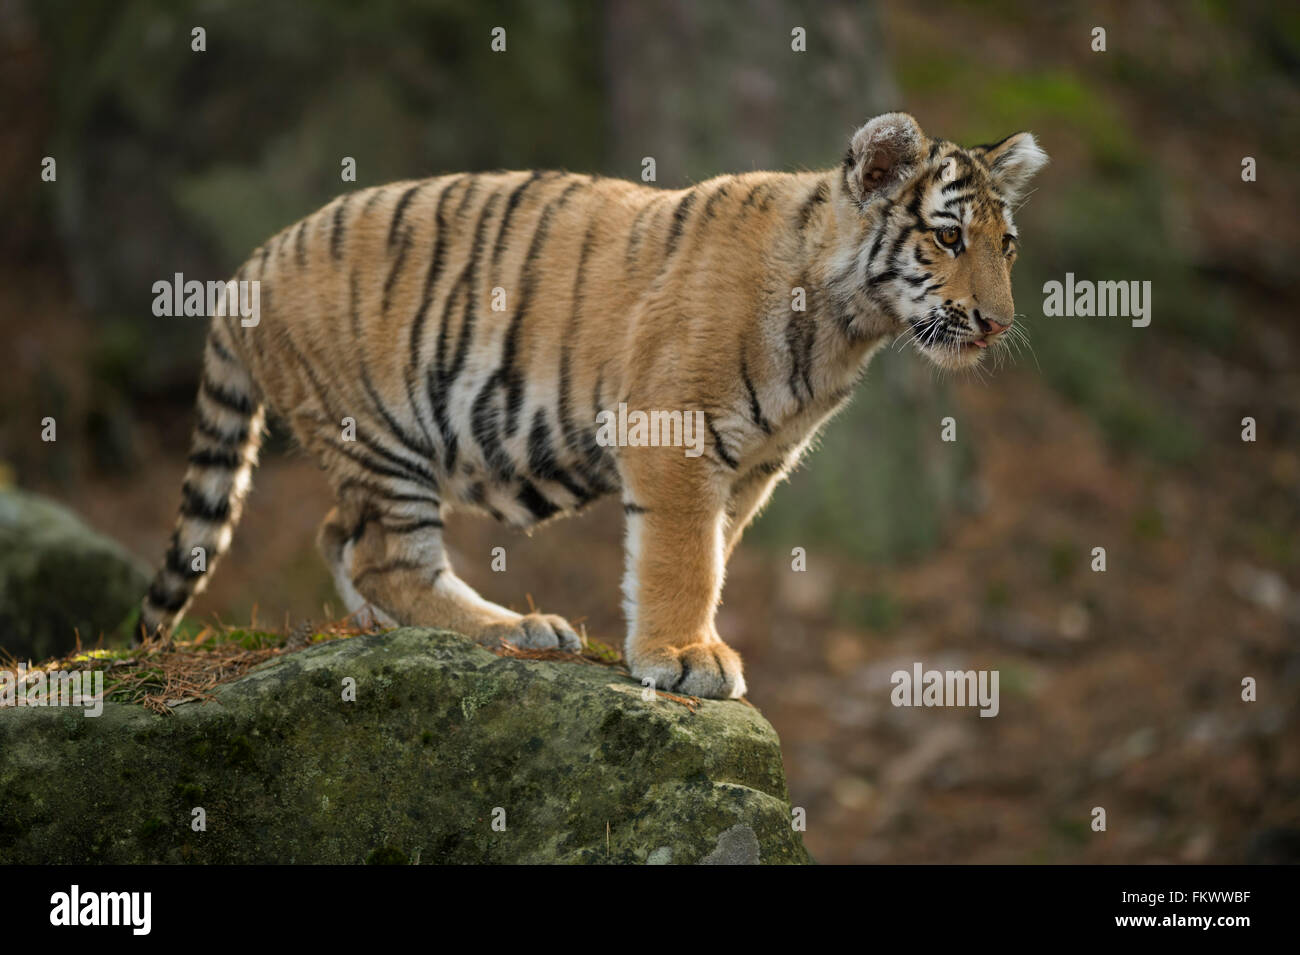 Tigre du Bengale / Koenigstiger ( Panthera tigris ), jeune animal, debout sur un rocher dans une forêt naturelle, regarde vers le bas. Banque D'Images